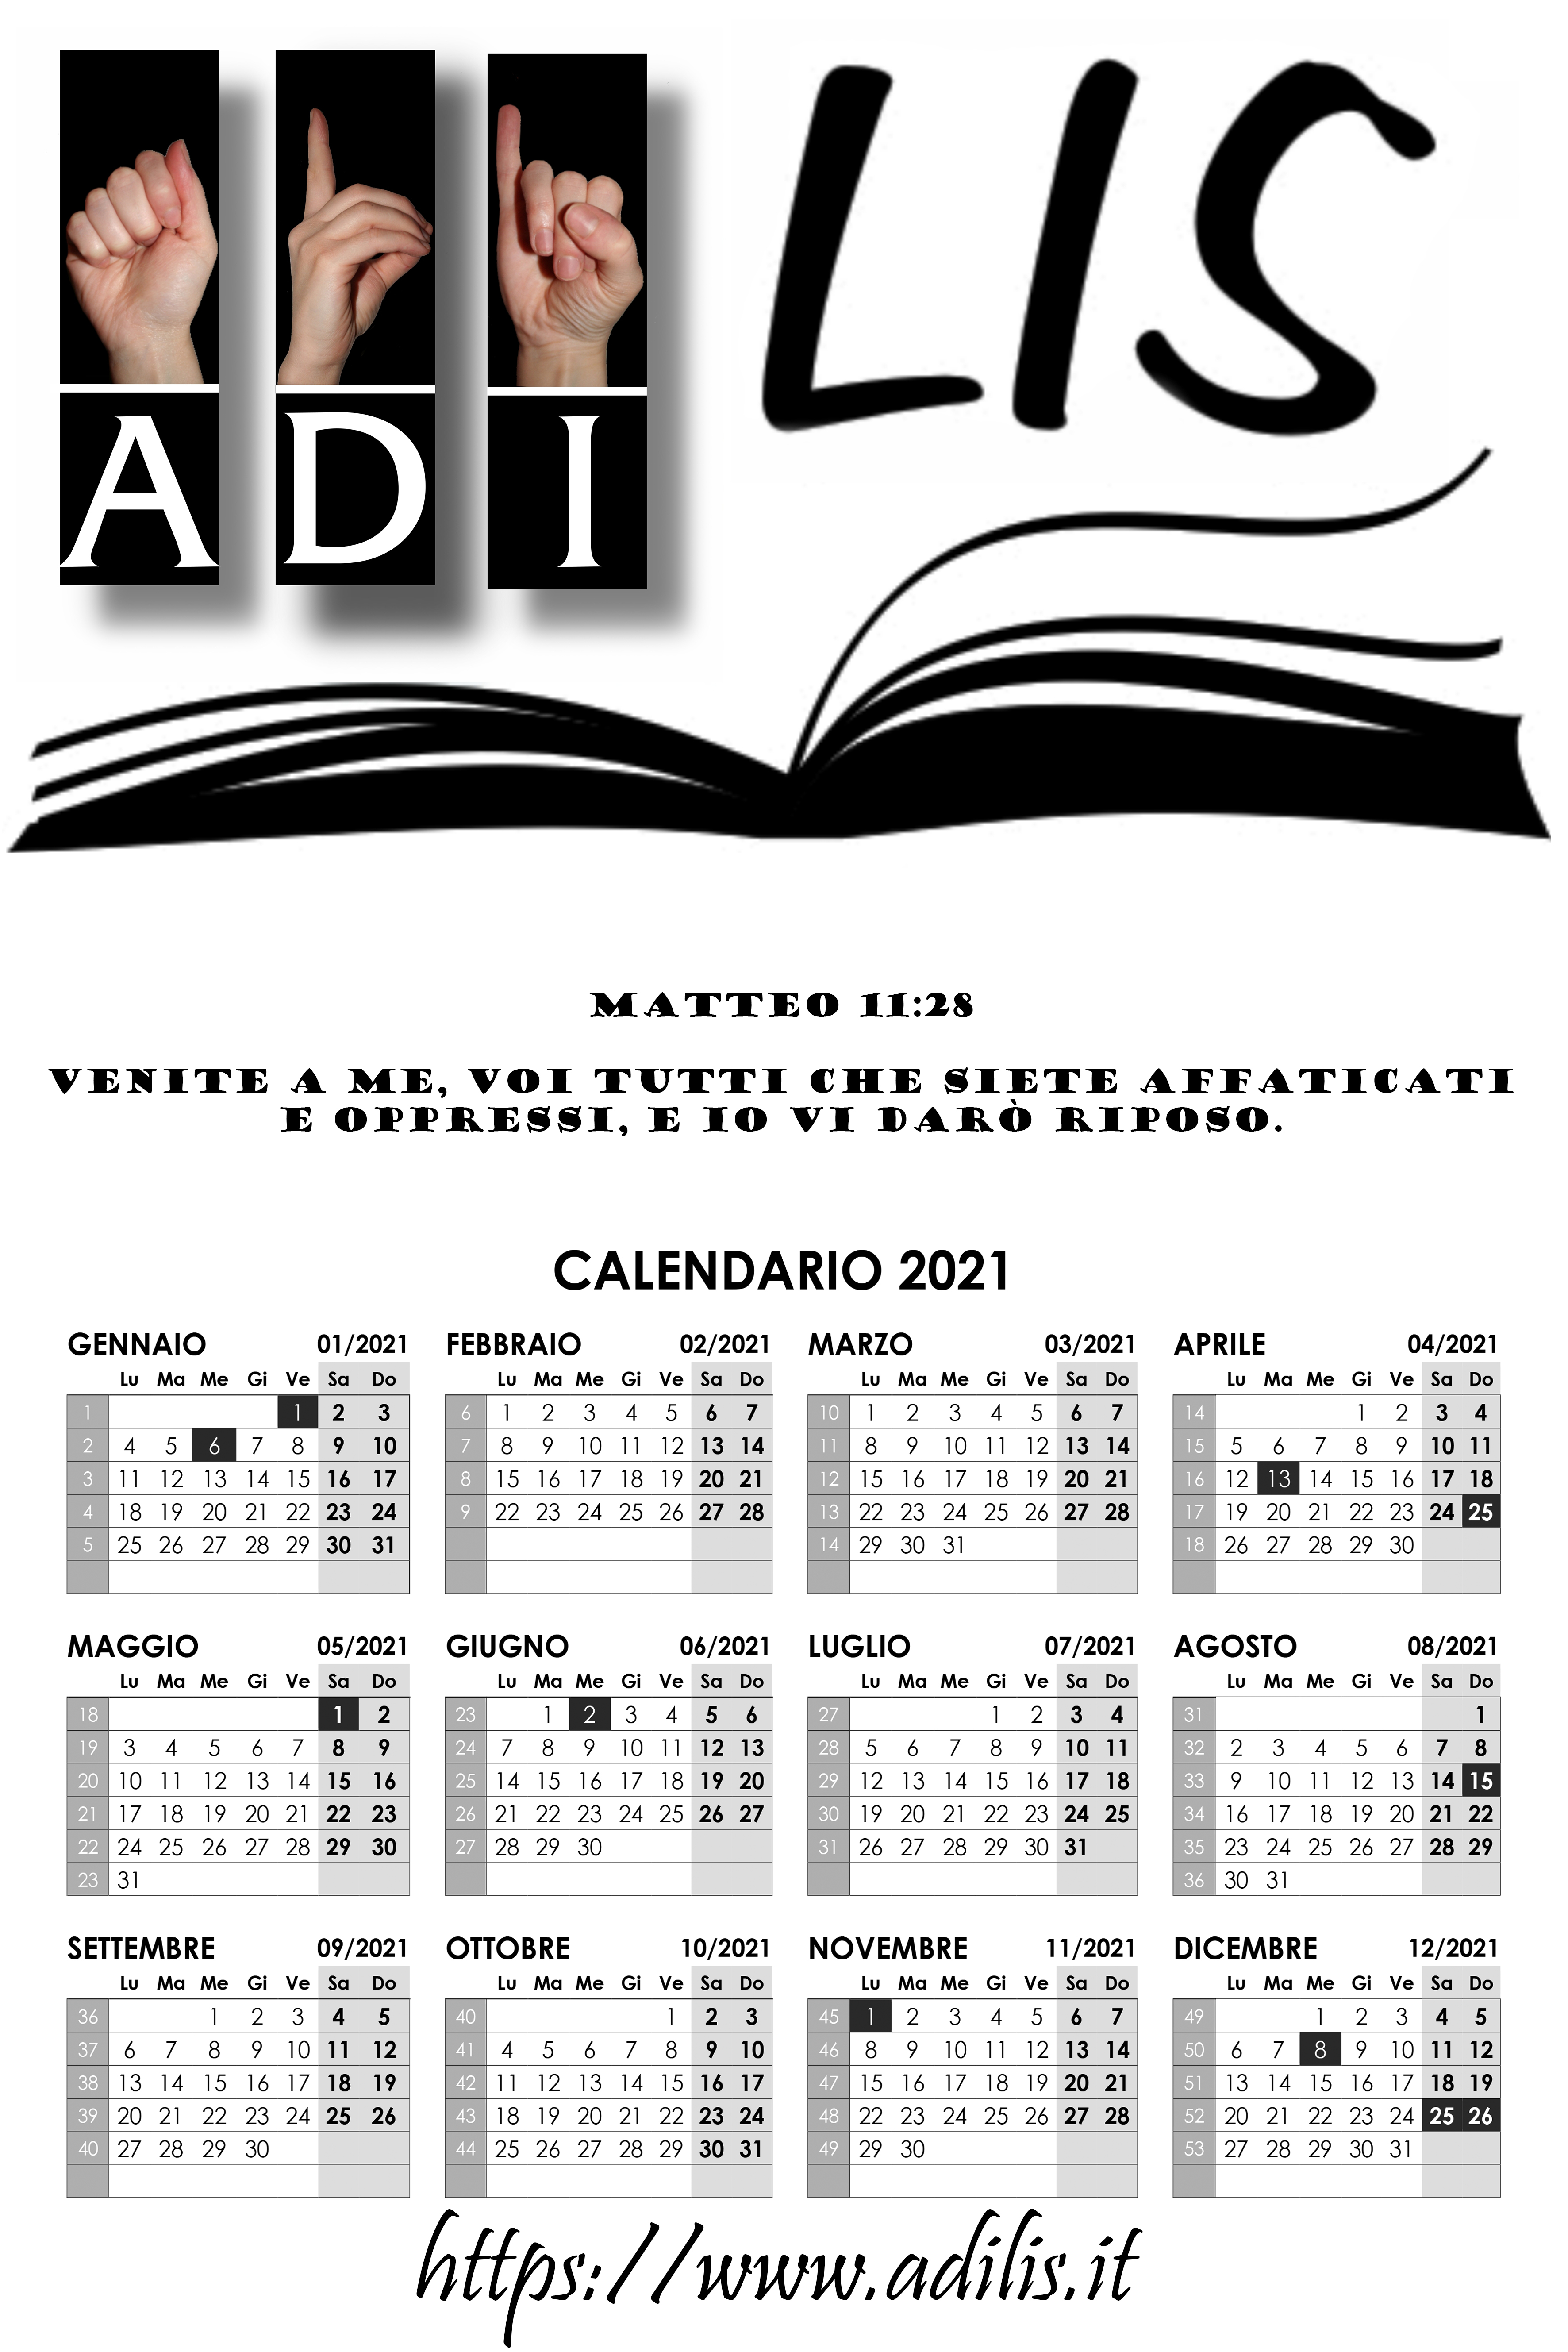 Calendario Adilis 2021